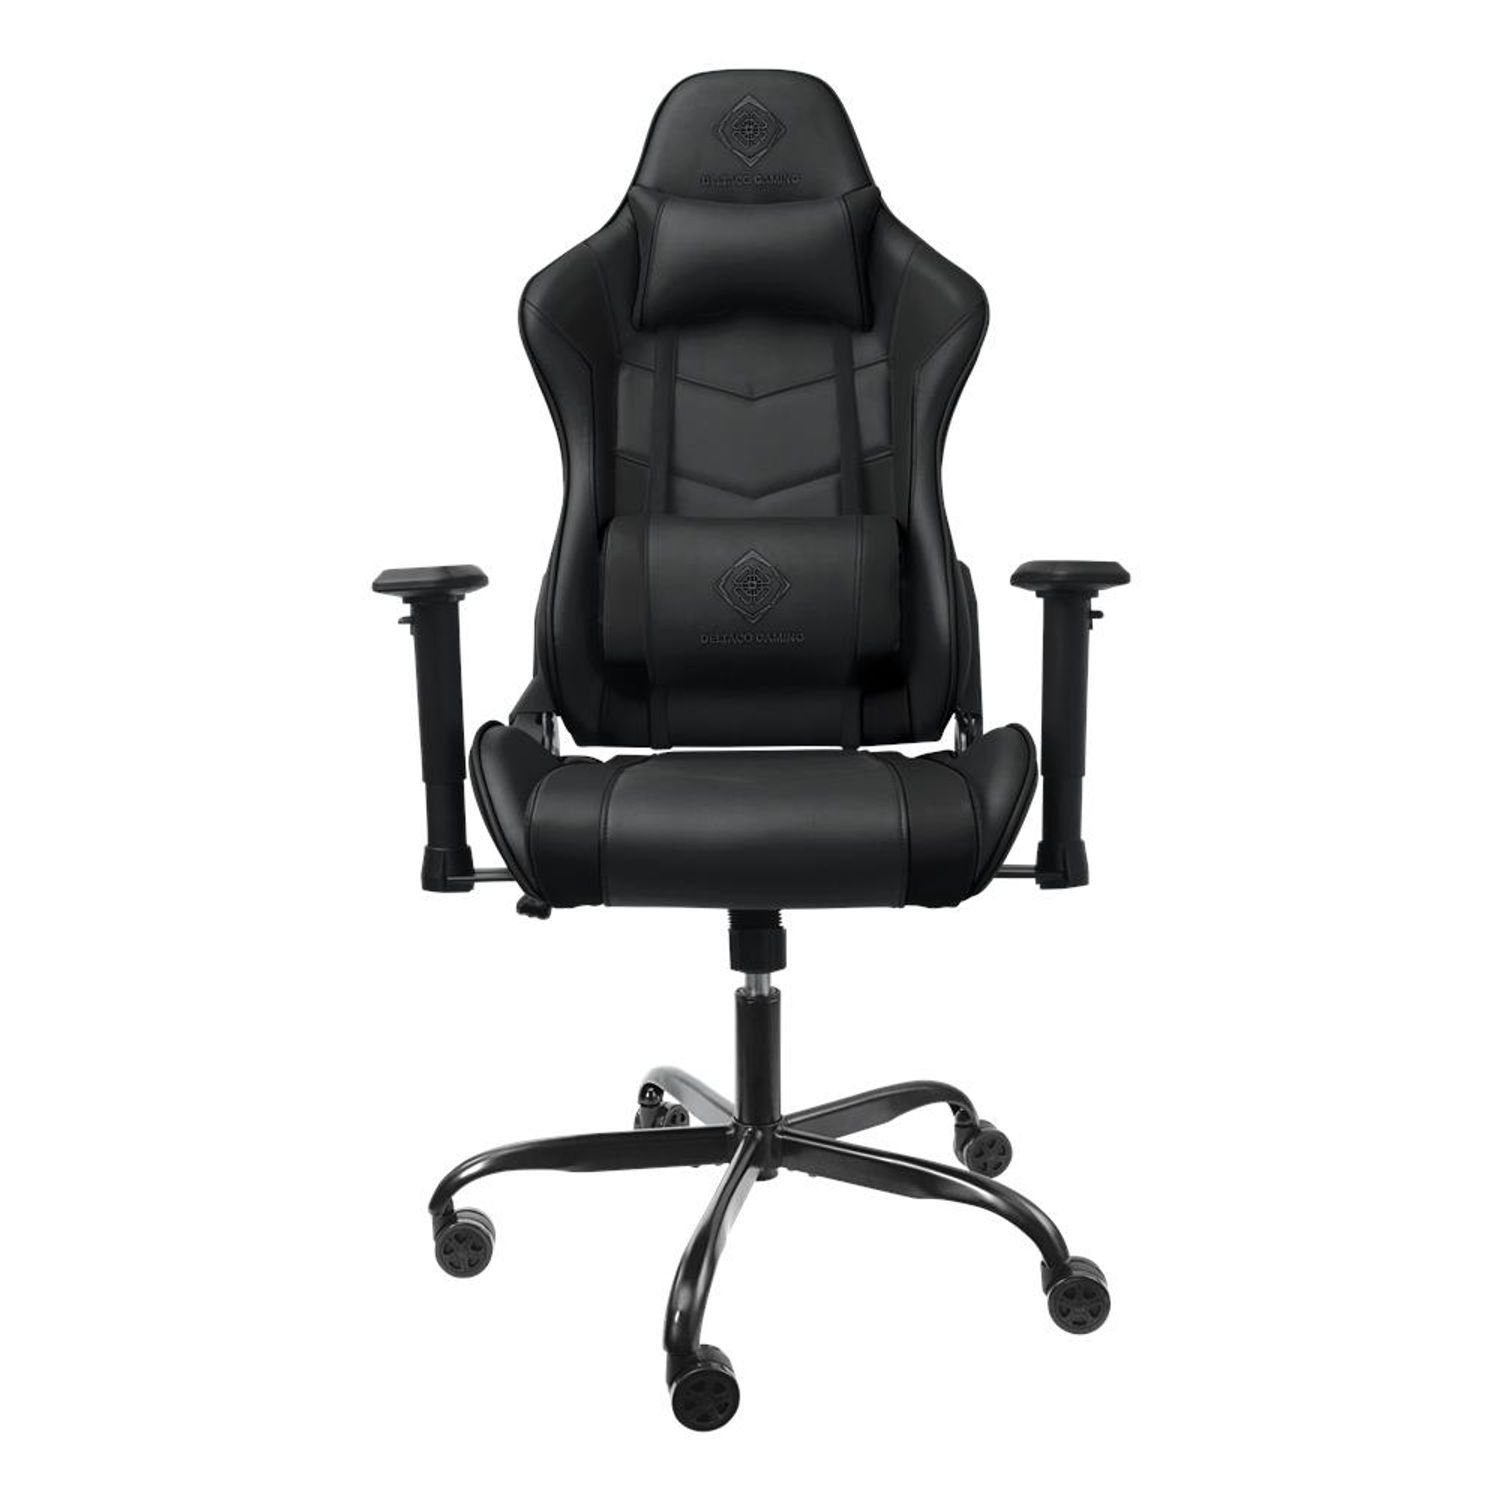 DELTACO Gaming-Stuhl Gaming-Stuhl ergonomisch, hohe Rückenlehne mit Kissen 90kg (kein Set), schw., extra groß, hohe Rückenlehne, inkl. 5 Jahre Herstellergarantie